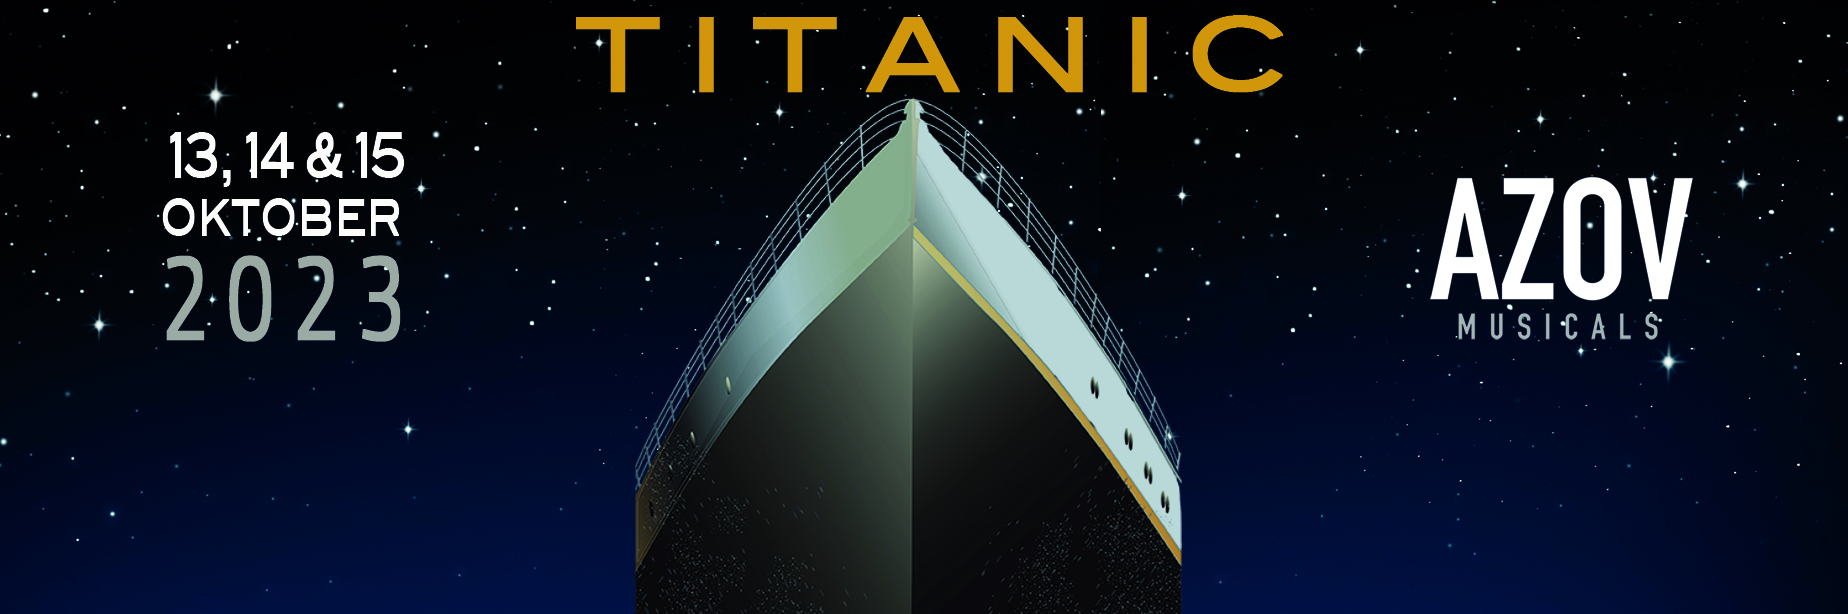 2023 – Titanic